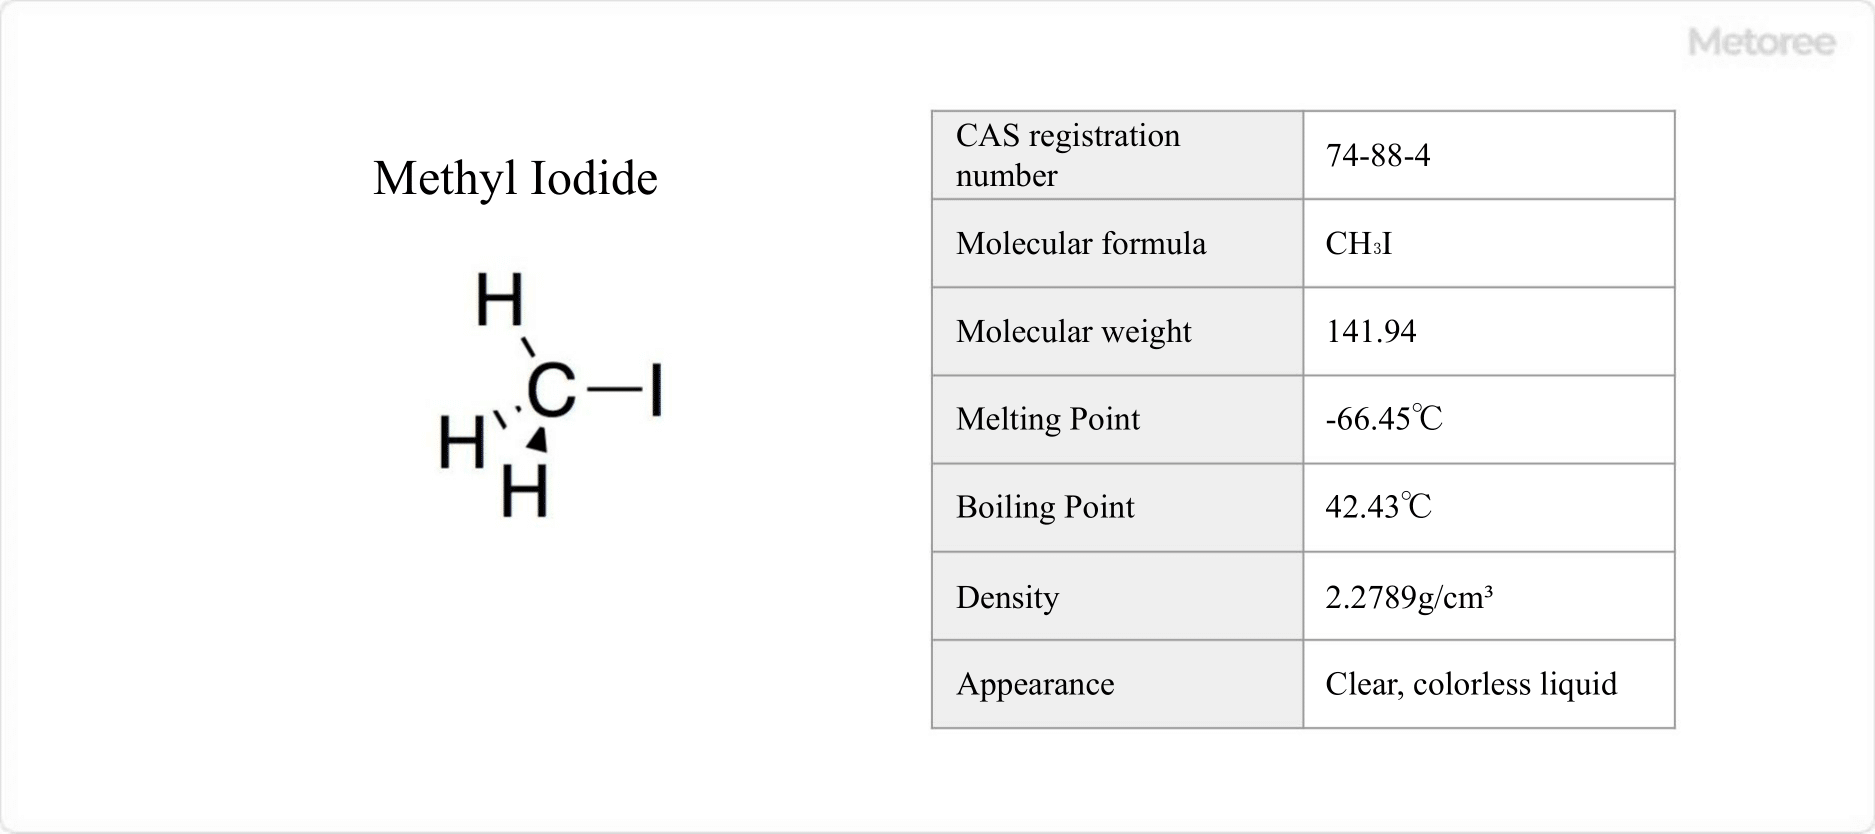 Figure 1. Basic information on methyl iodide